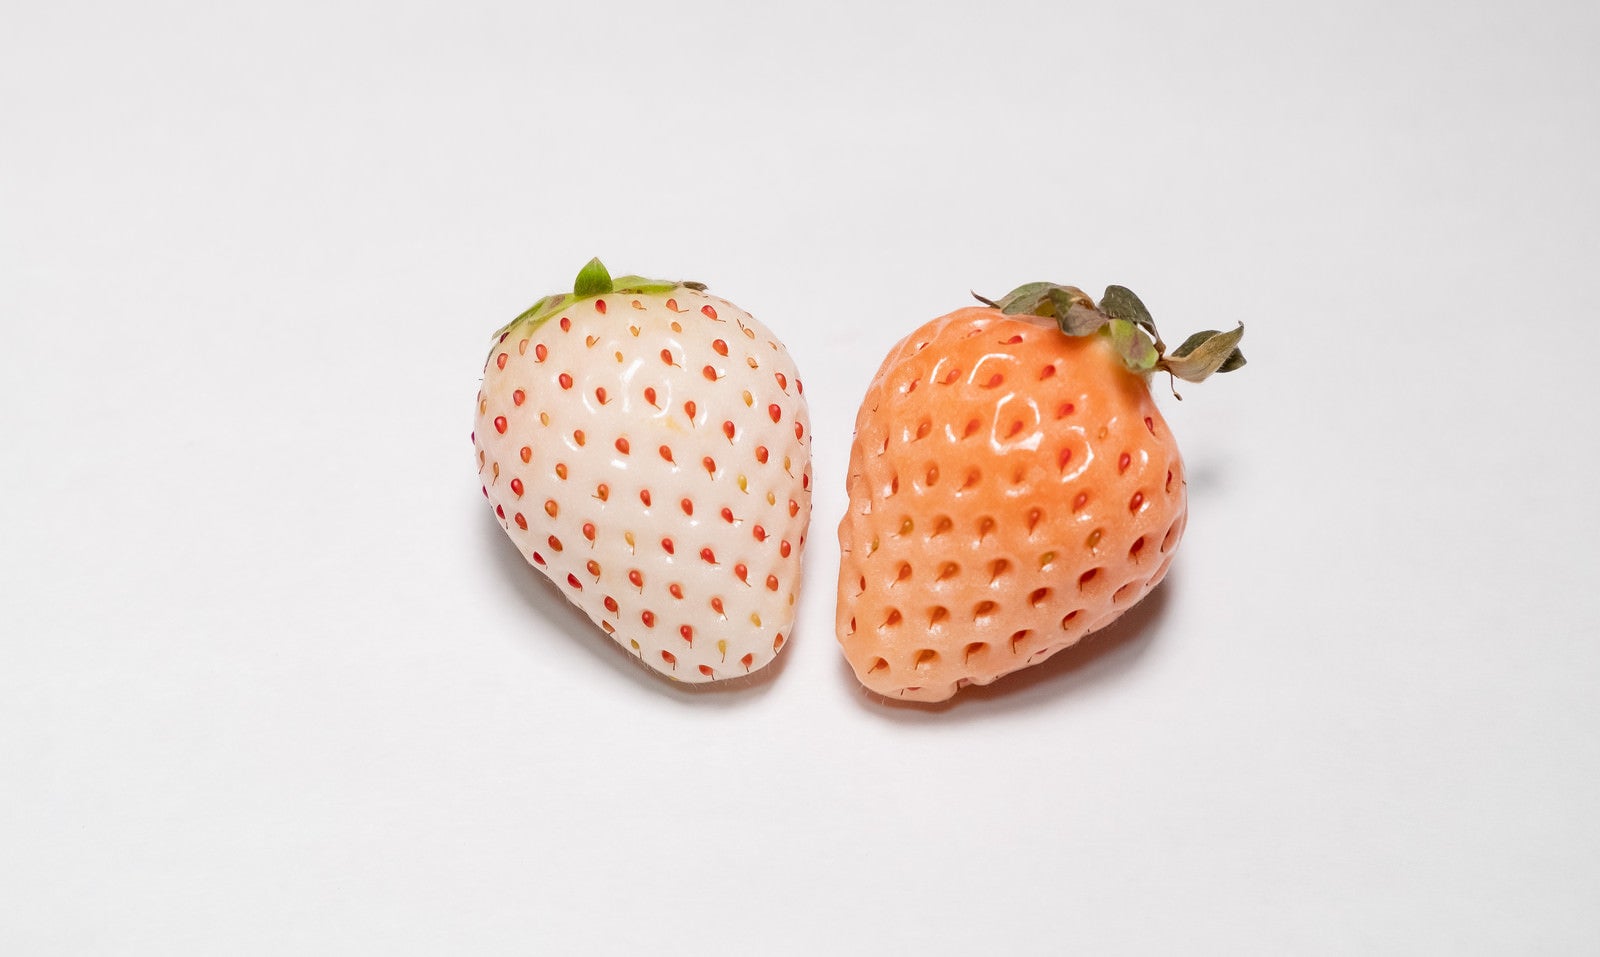 「白い苺と薄い桃色の苺」の写真